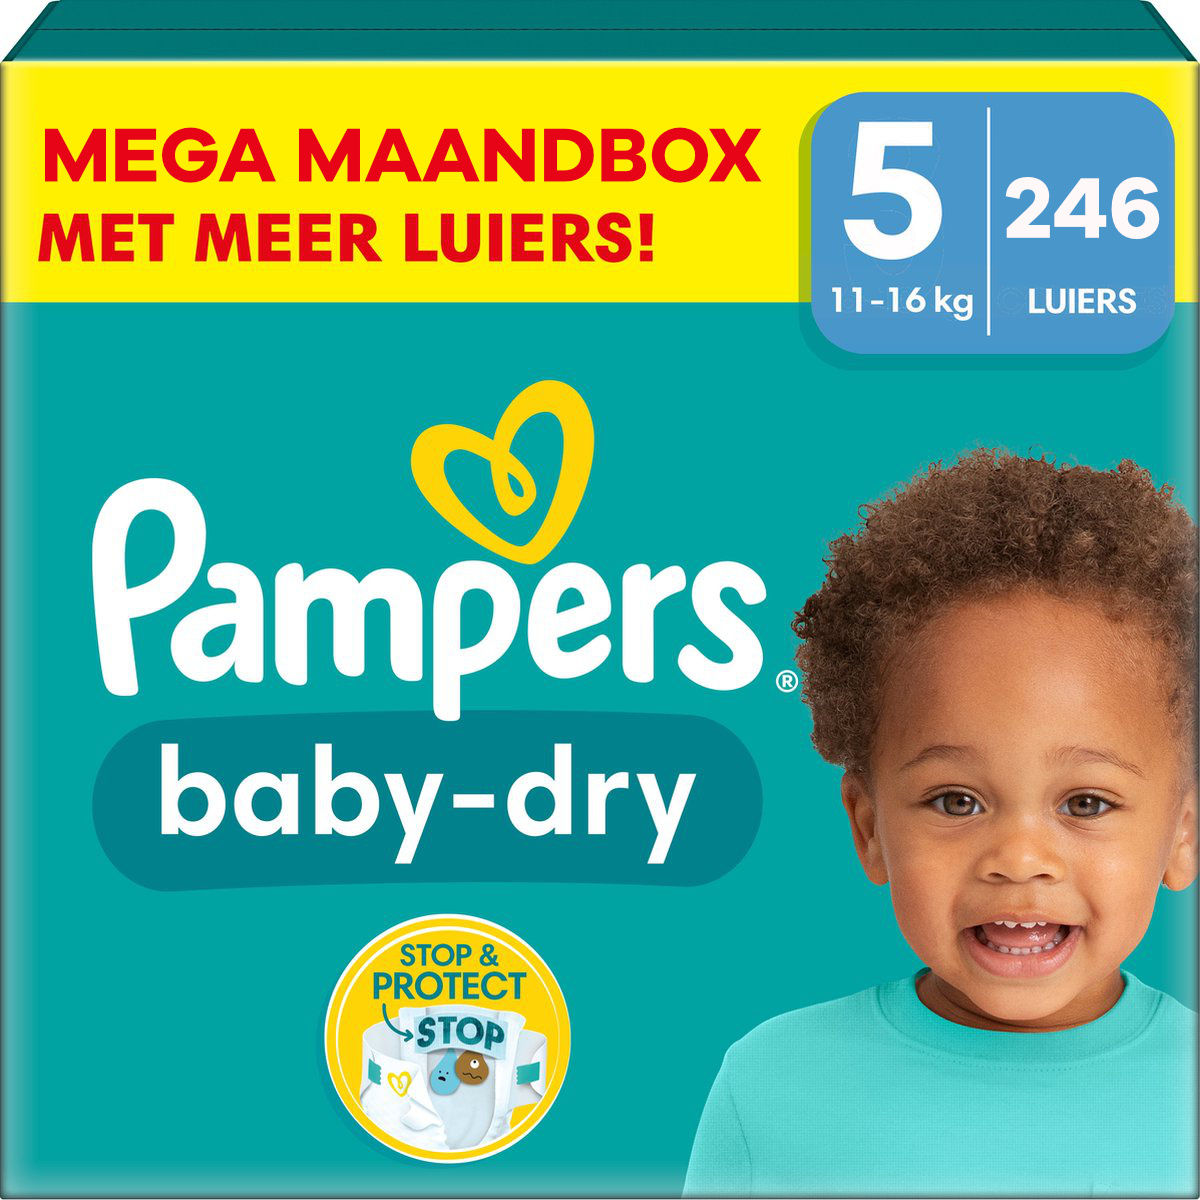 pit Kinderen Zeggen Pampers - Baby Dry - Maat 5 - Mega Maandbox - 246 luiers - Babydrogist.nl